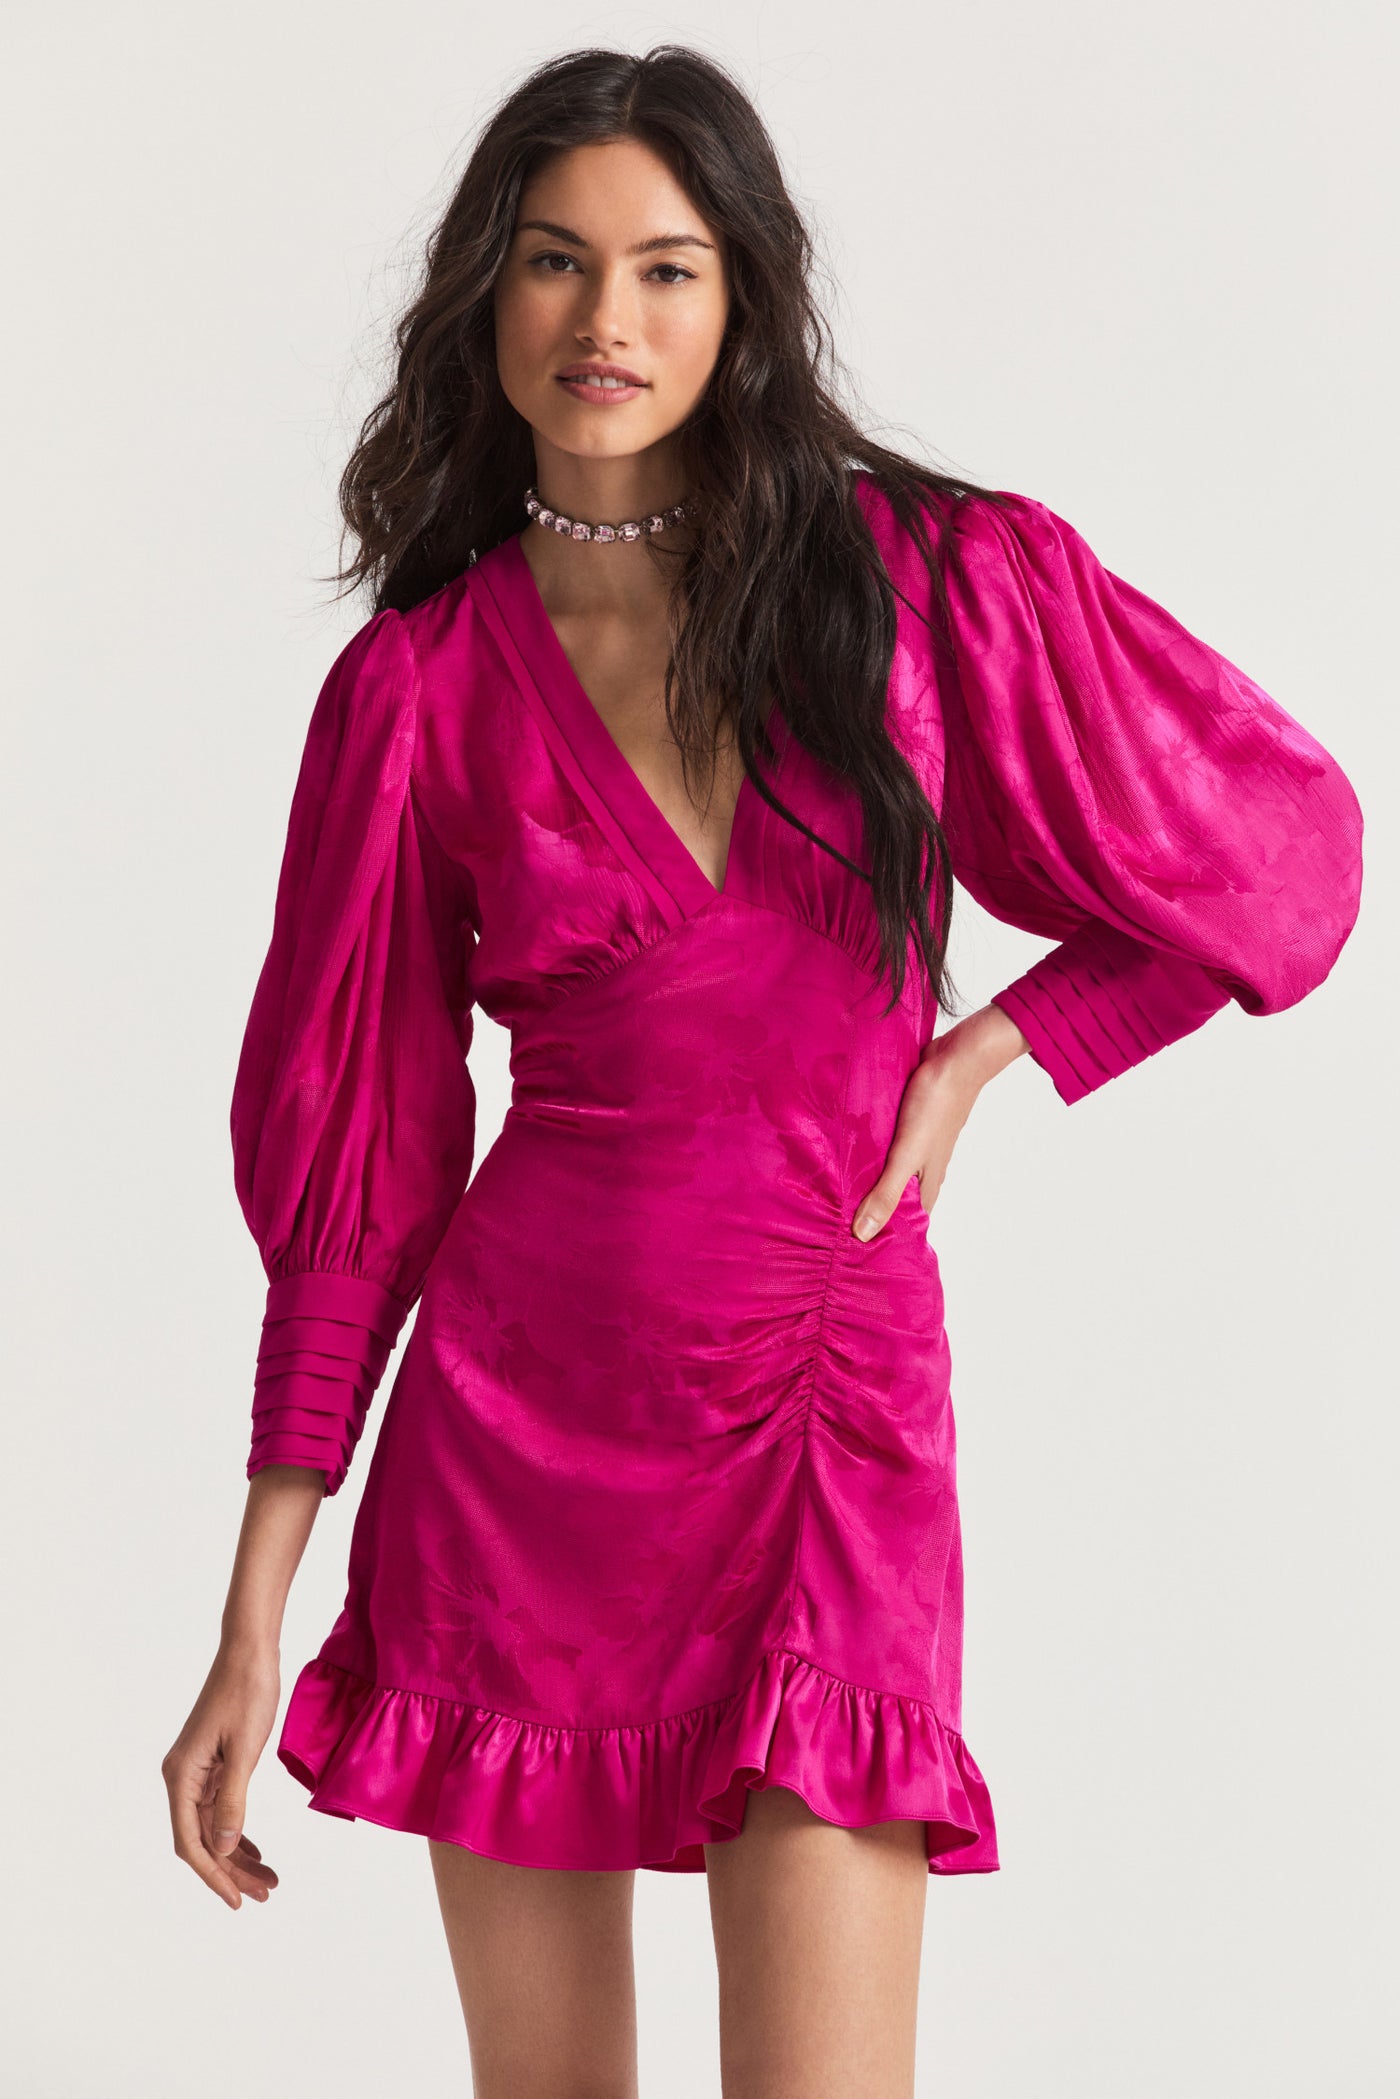 Revaline Mini Dress - Women's Party Luxury Sale Dresses | LoveShackFancy